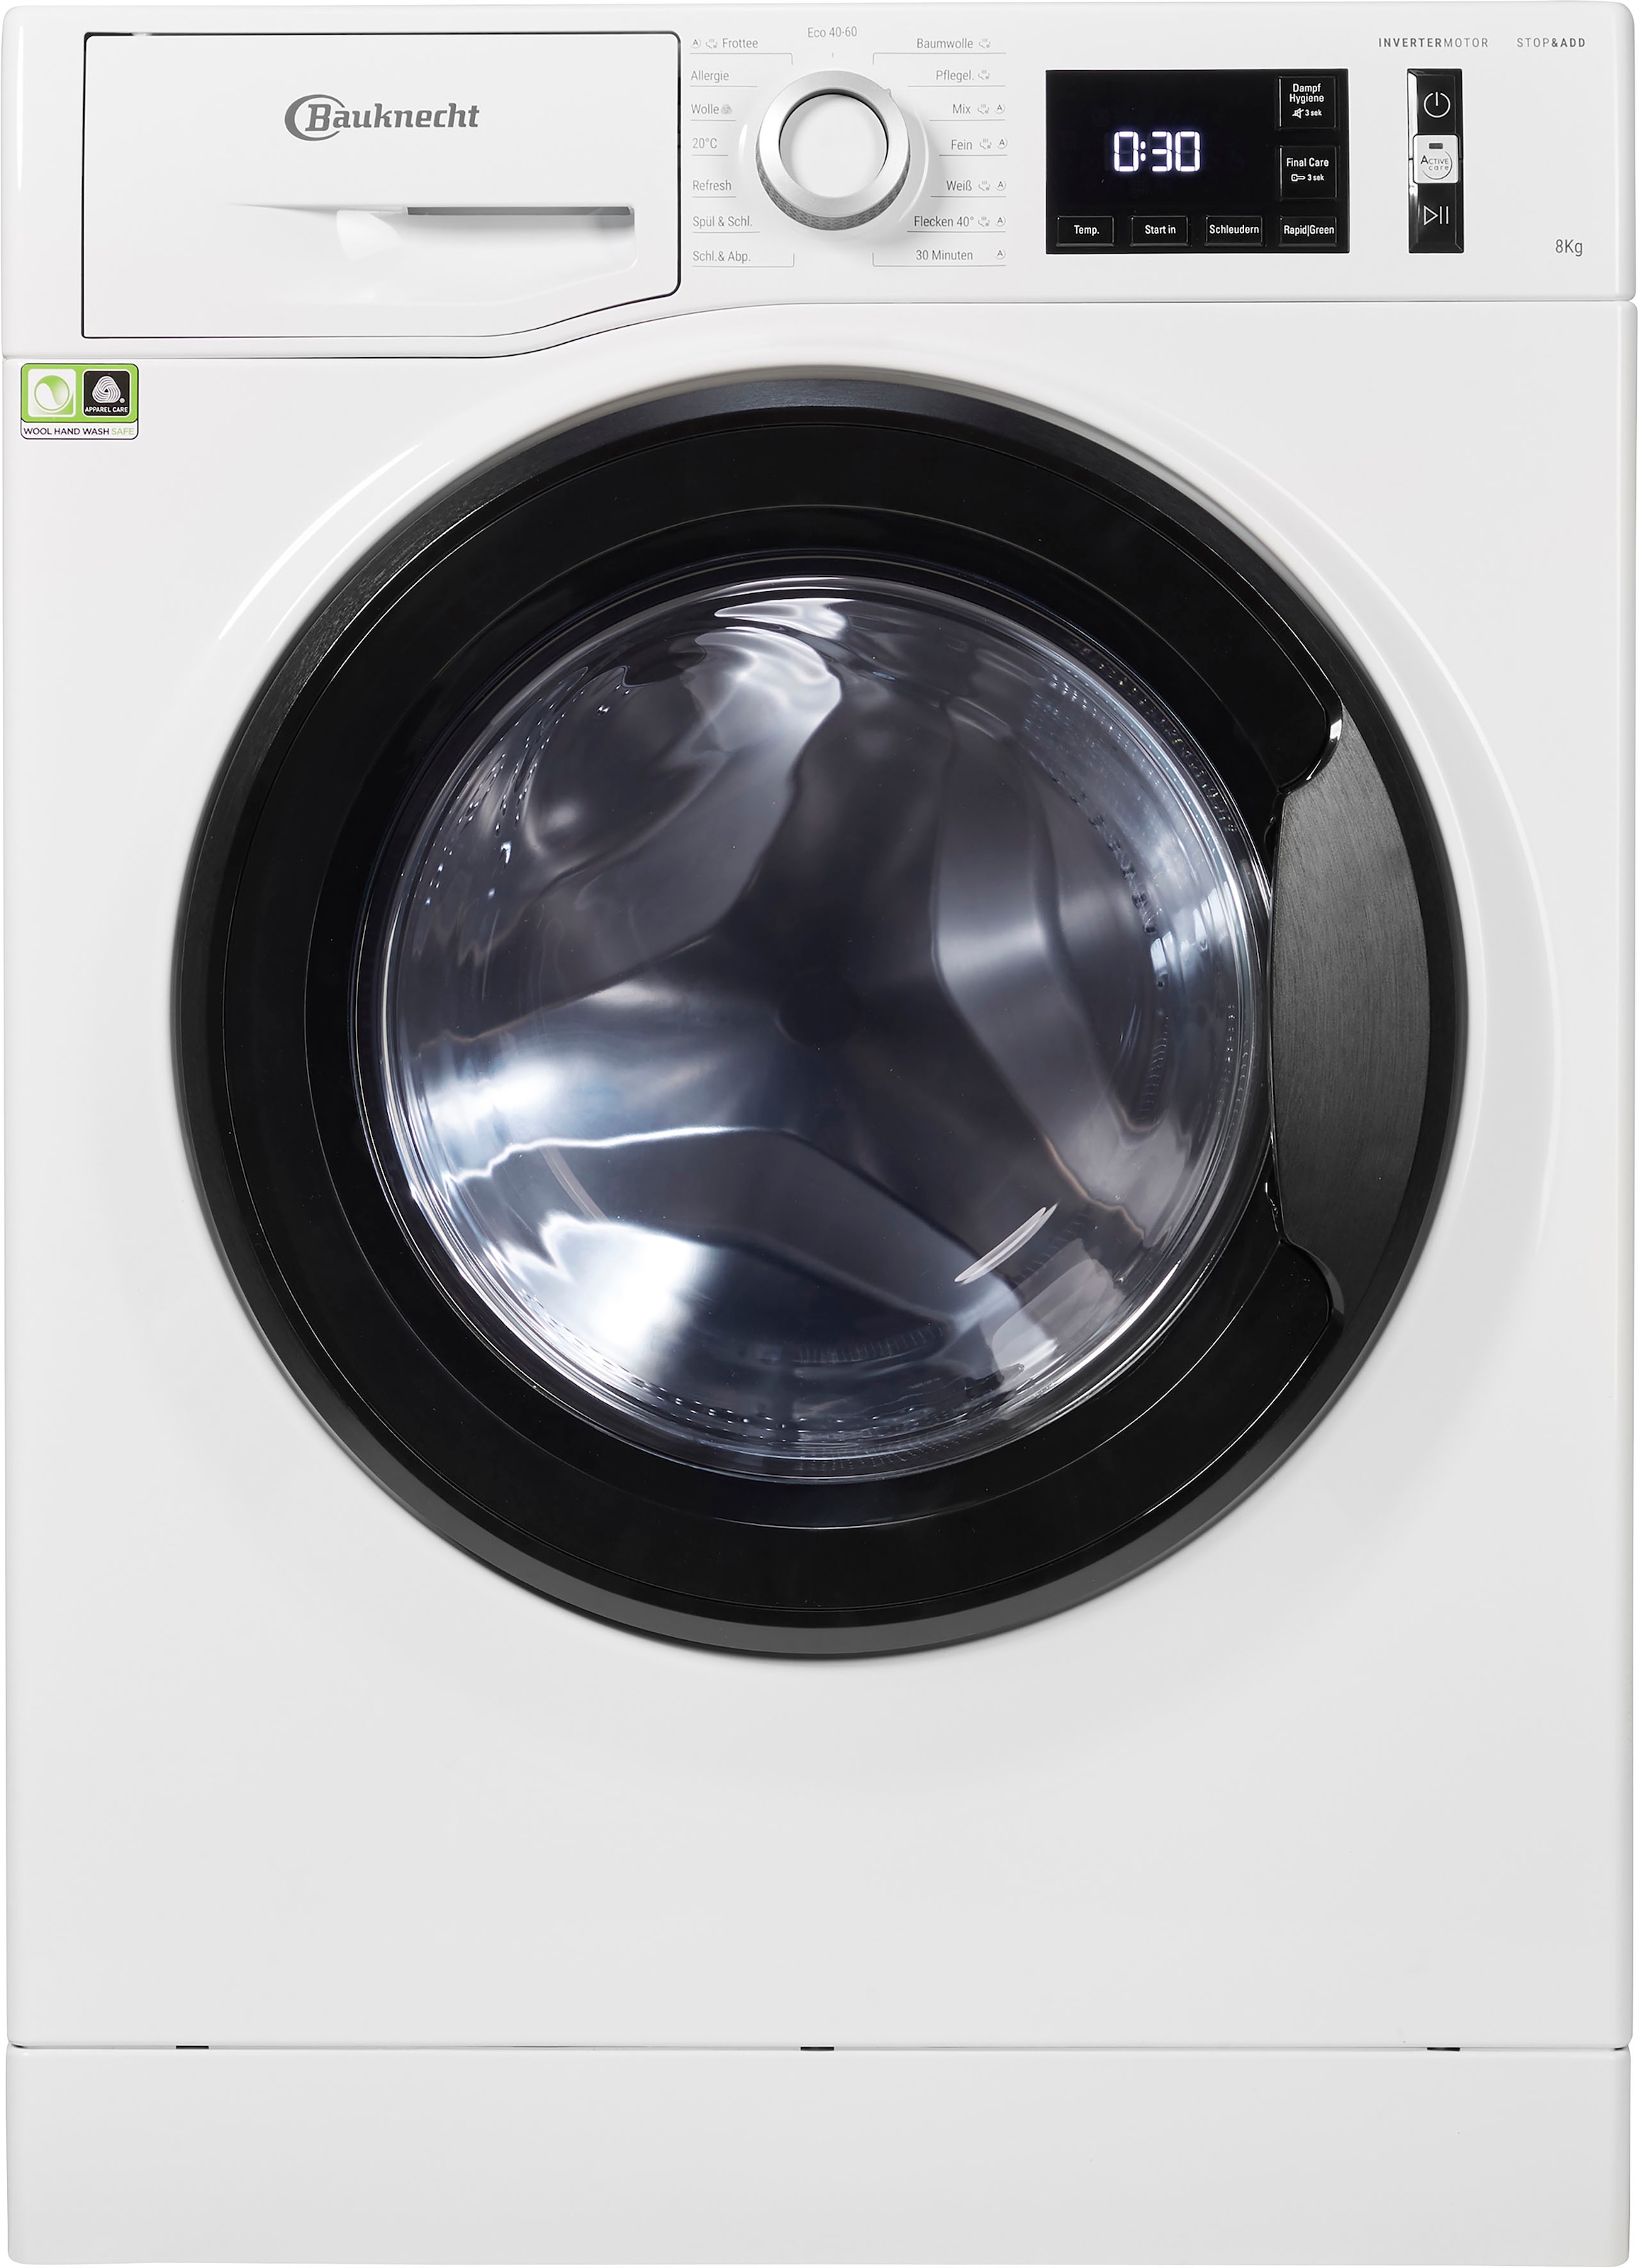 online Eco BAUKNECHT 1400 OTTO Super 8421«, U/min 8421, jetzt Waschmaschine bei kg, 8 »Super Eco